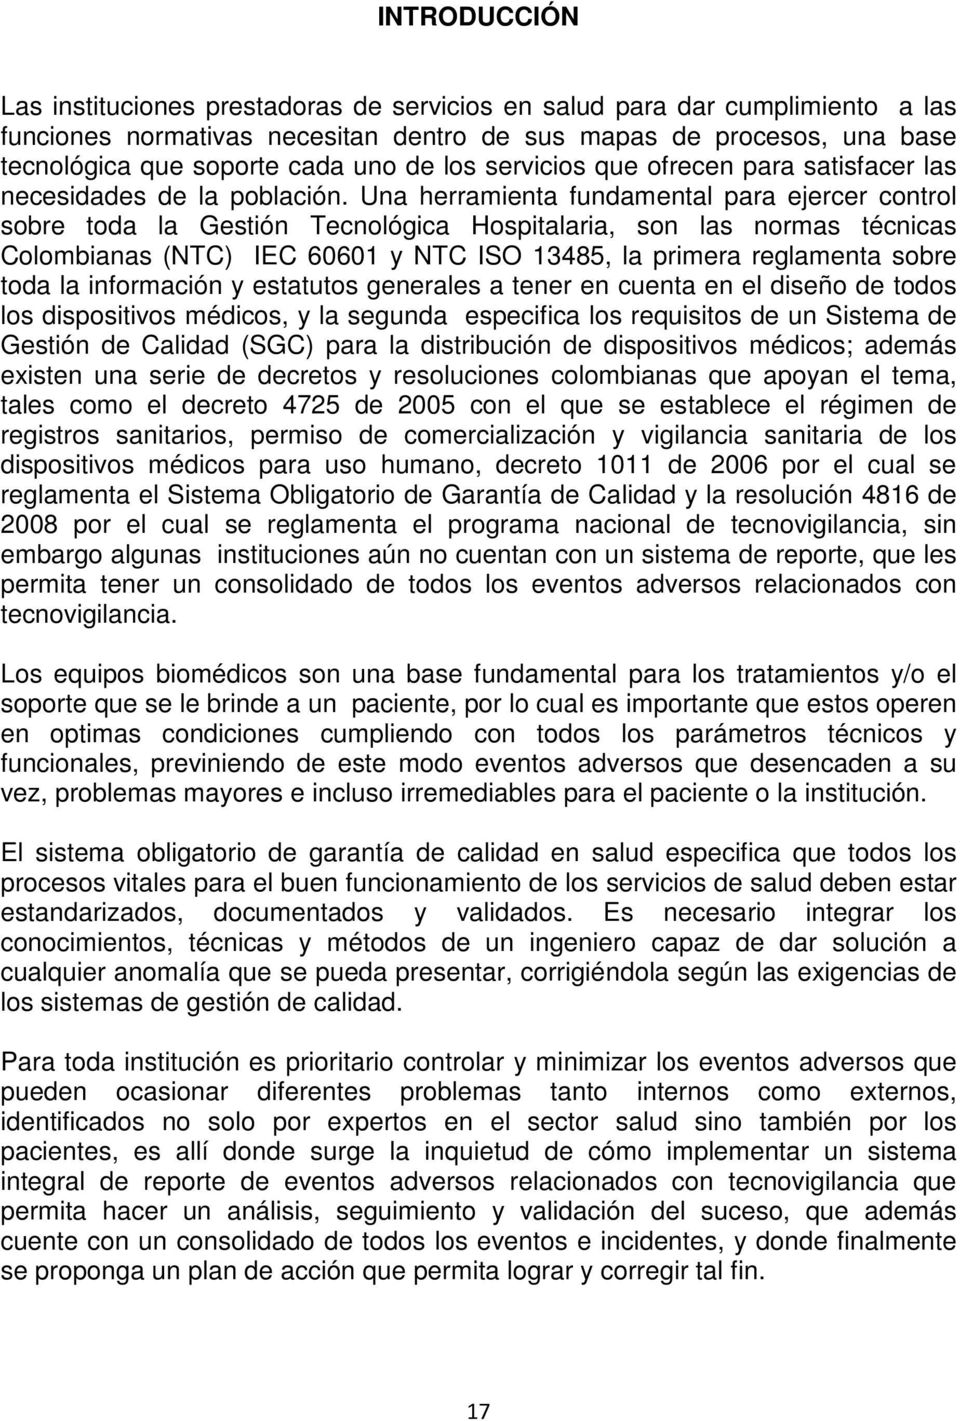 Una herramienta fundamental para ejercer control sobre toda la Gestión Tecnológica Hospitalaria, son las normas técnicas Colombianas (NTC) IEC 60601 y NTC ISO 13485, la primera reglamenta sobre toda